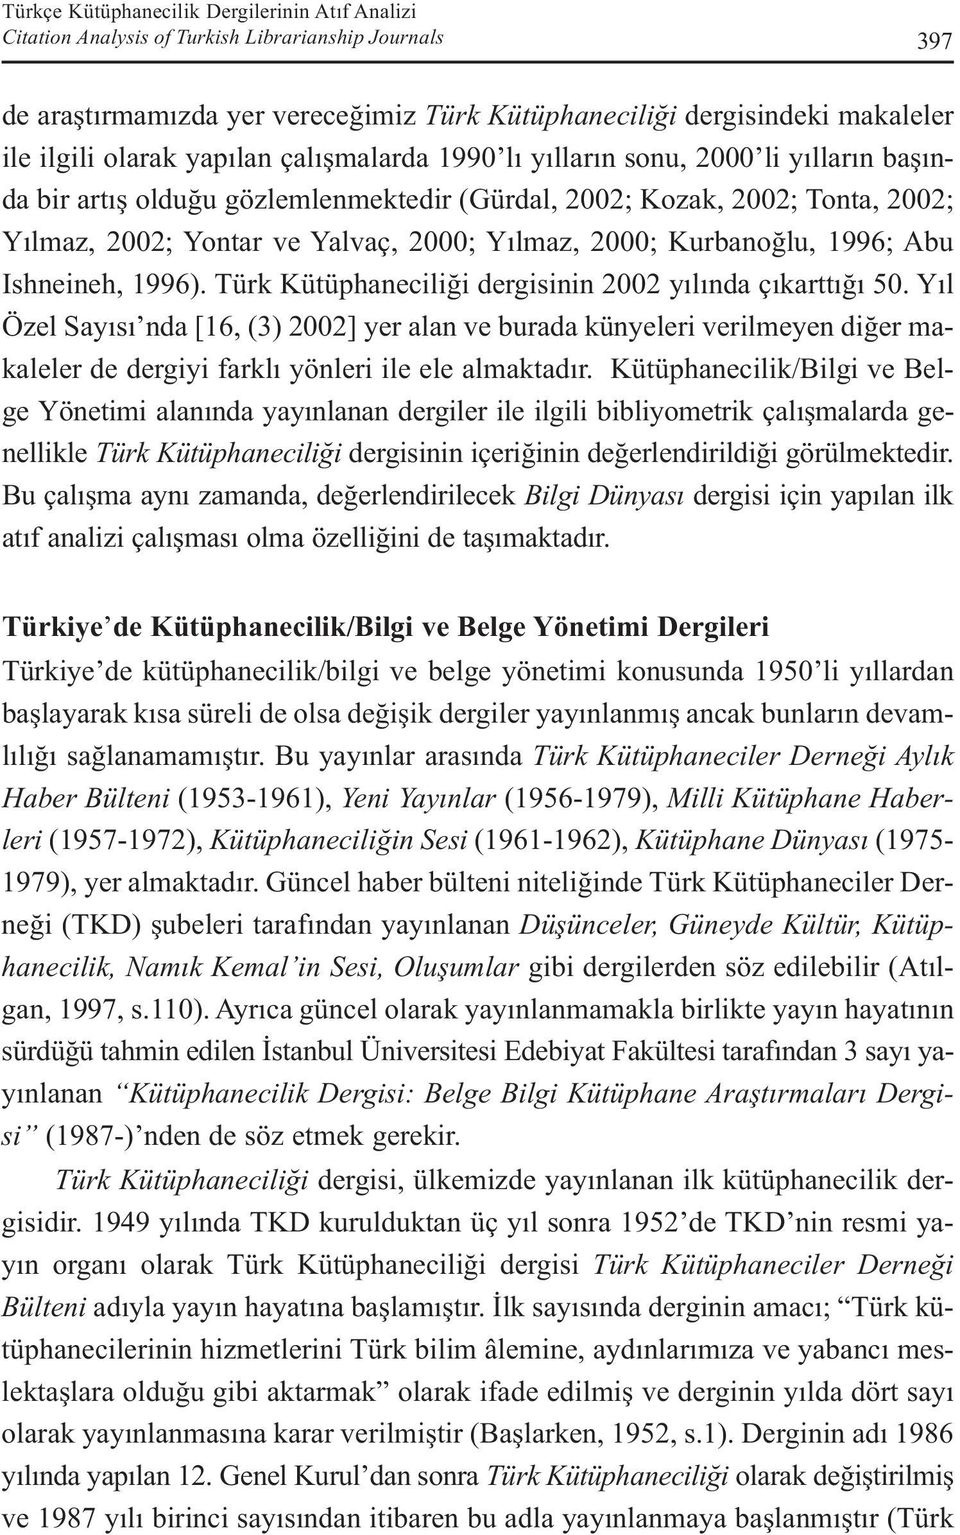 Kurbanoğlu, 1996; Abu Ishneineh, 1996). Türk Kütüphaneciliği dergisinin 2002 yılında çıkarttığı 50.